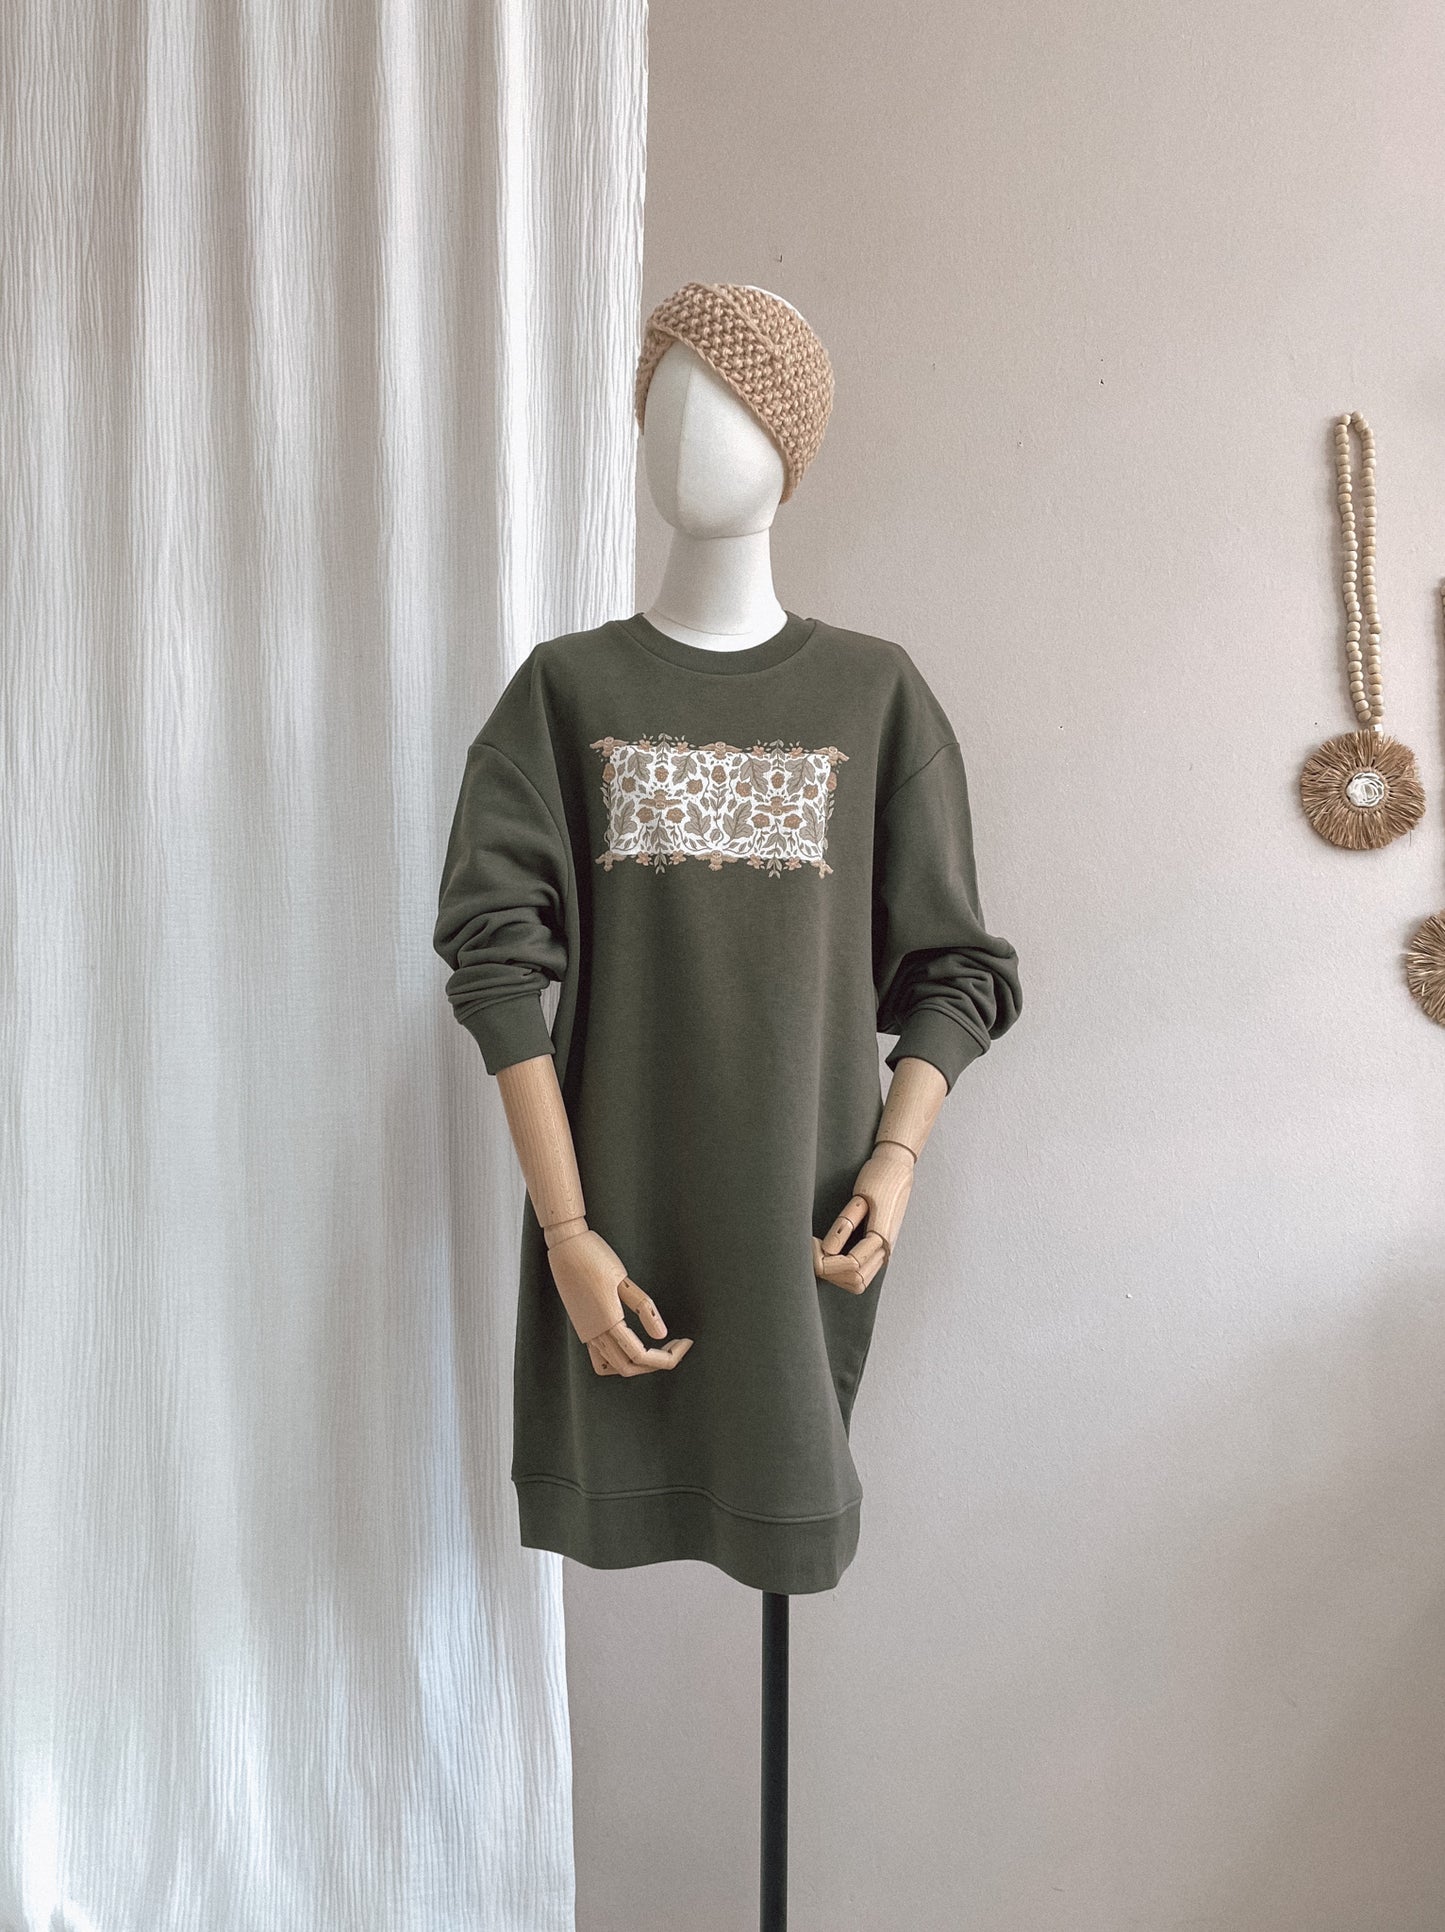 Oversized sweatshirt dress / Ecru botanical owls / rosemary